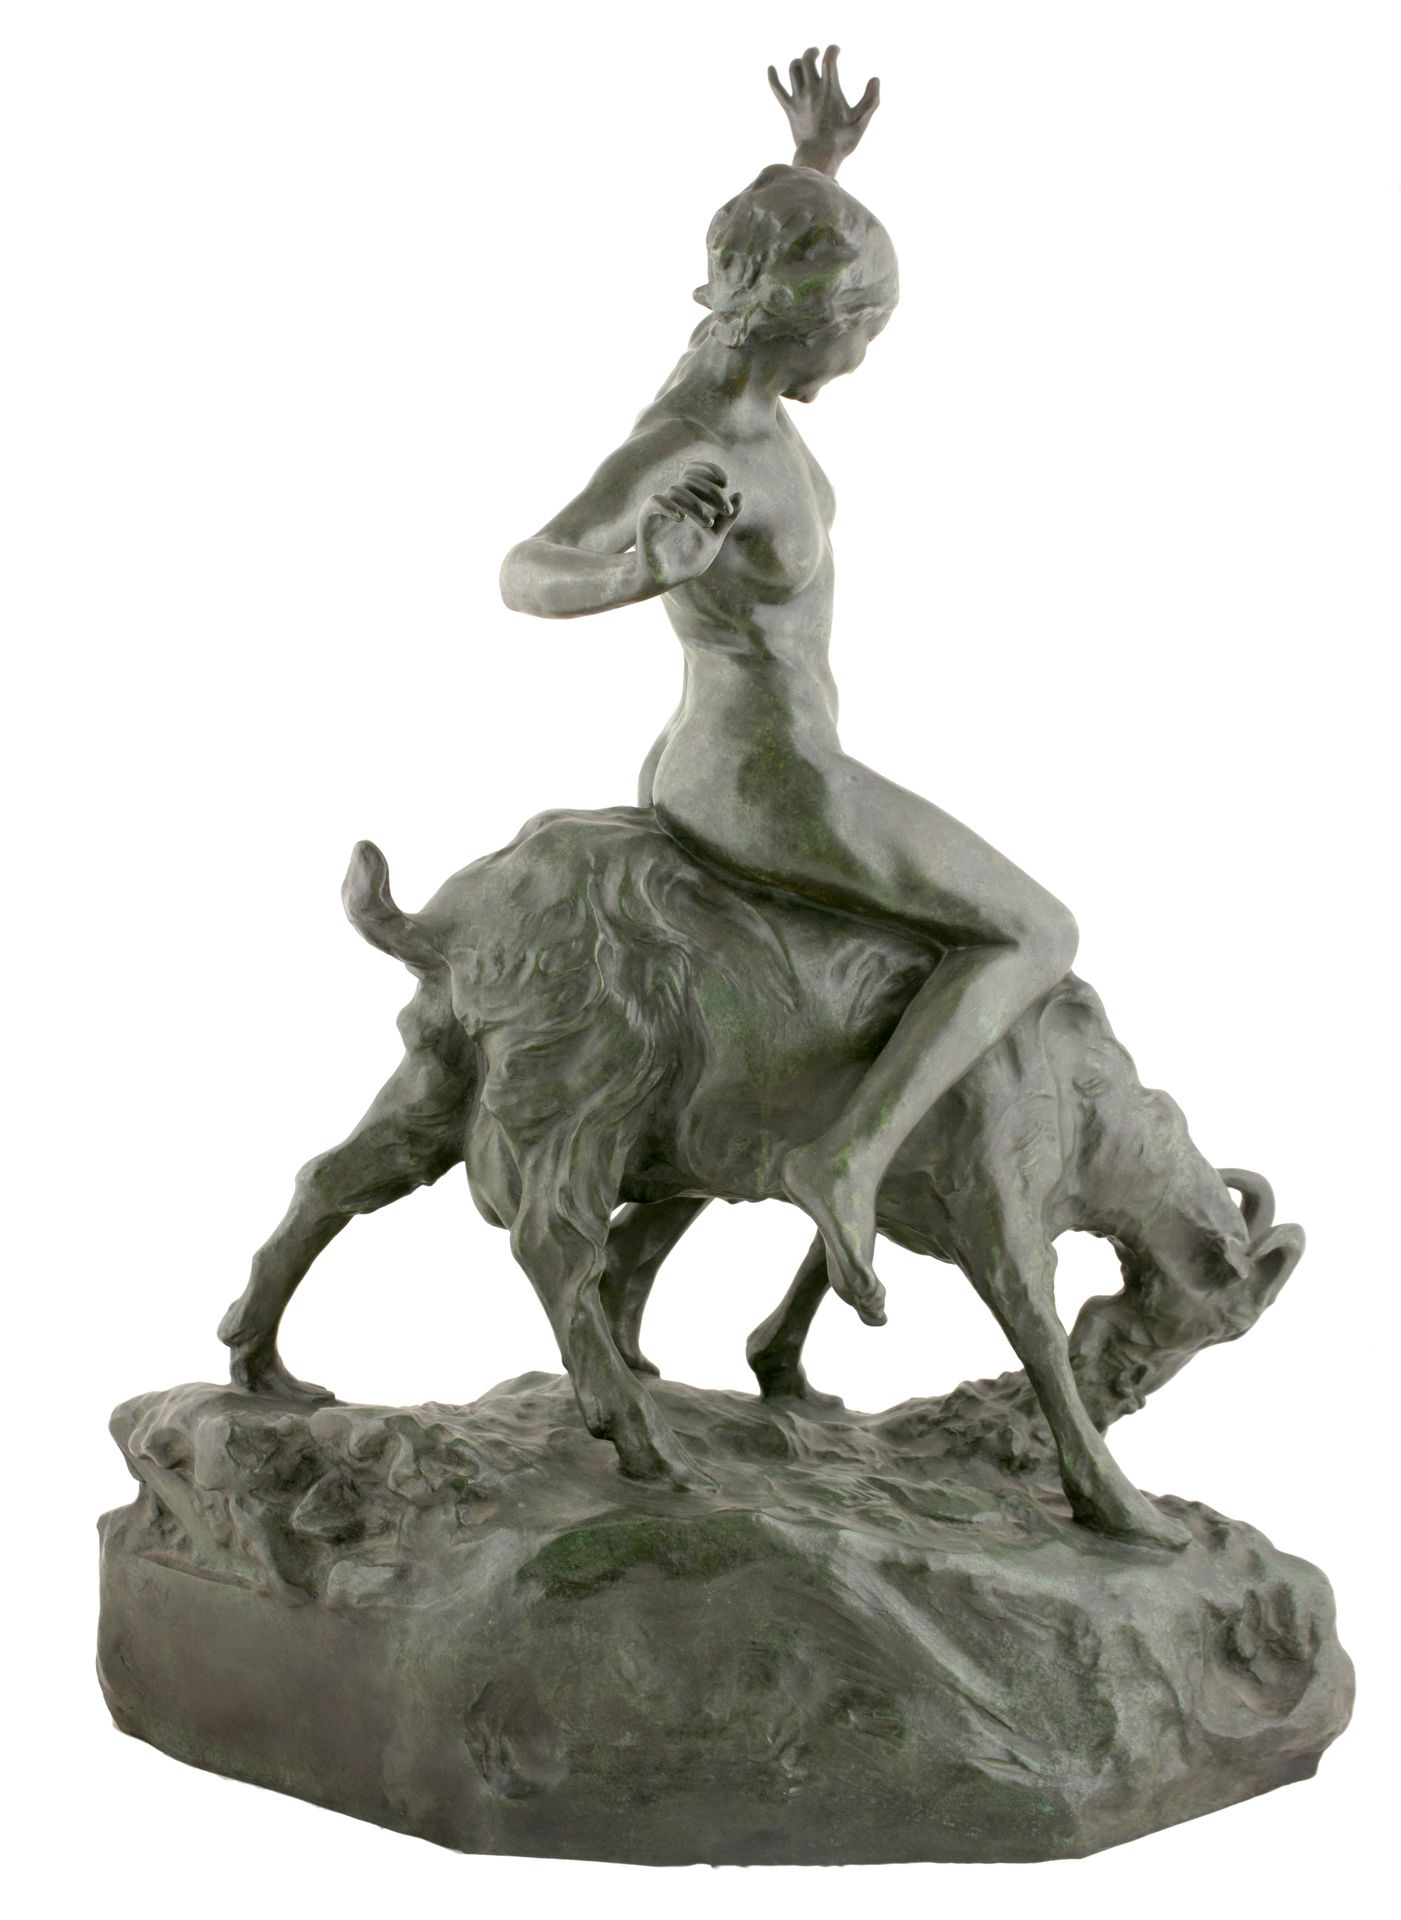 COURTENS, Alfred (1889-1967) Jeune fille nue chevauchant une chèvre (1914)





&hellip;